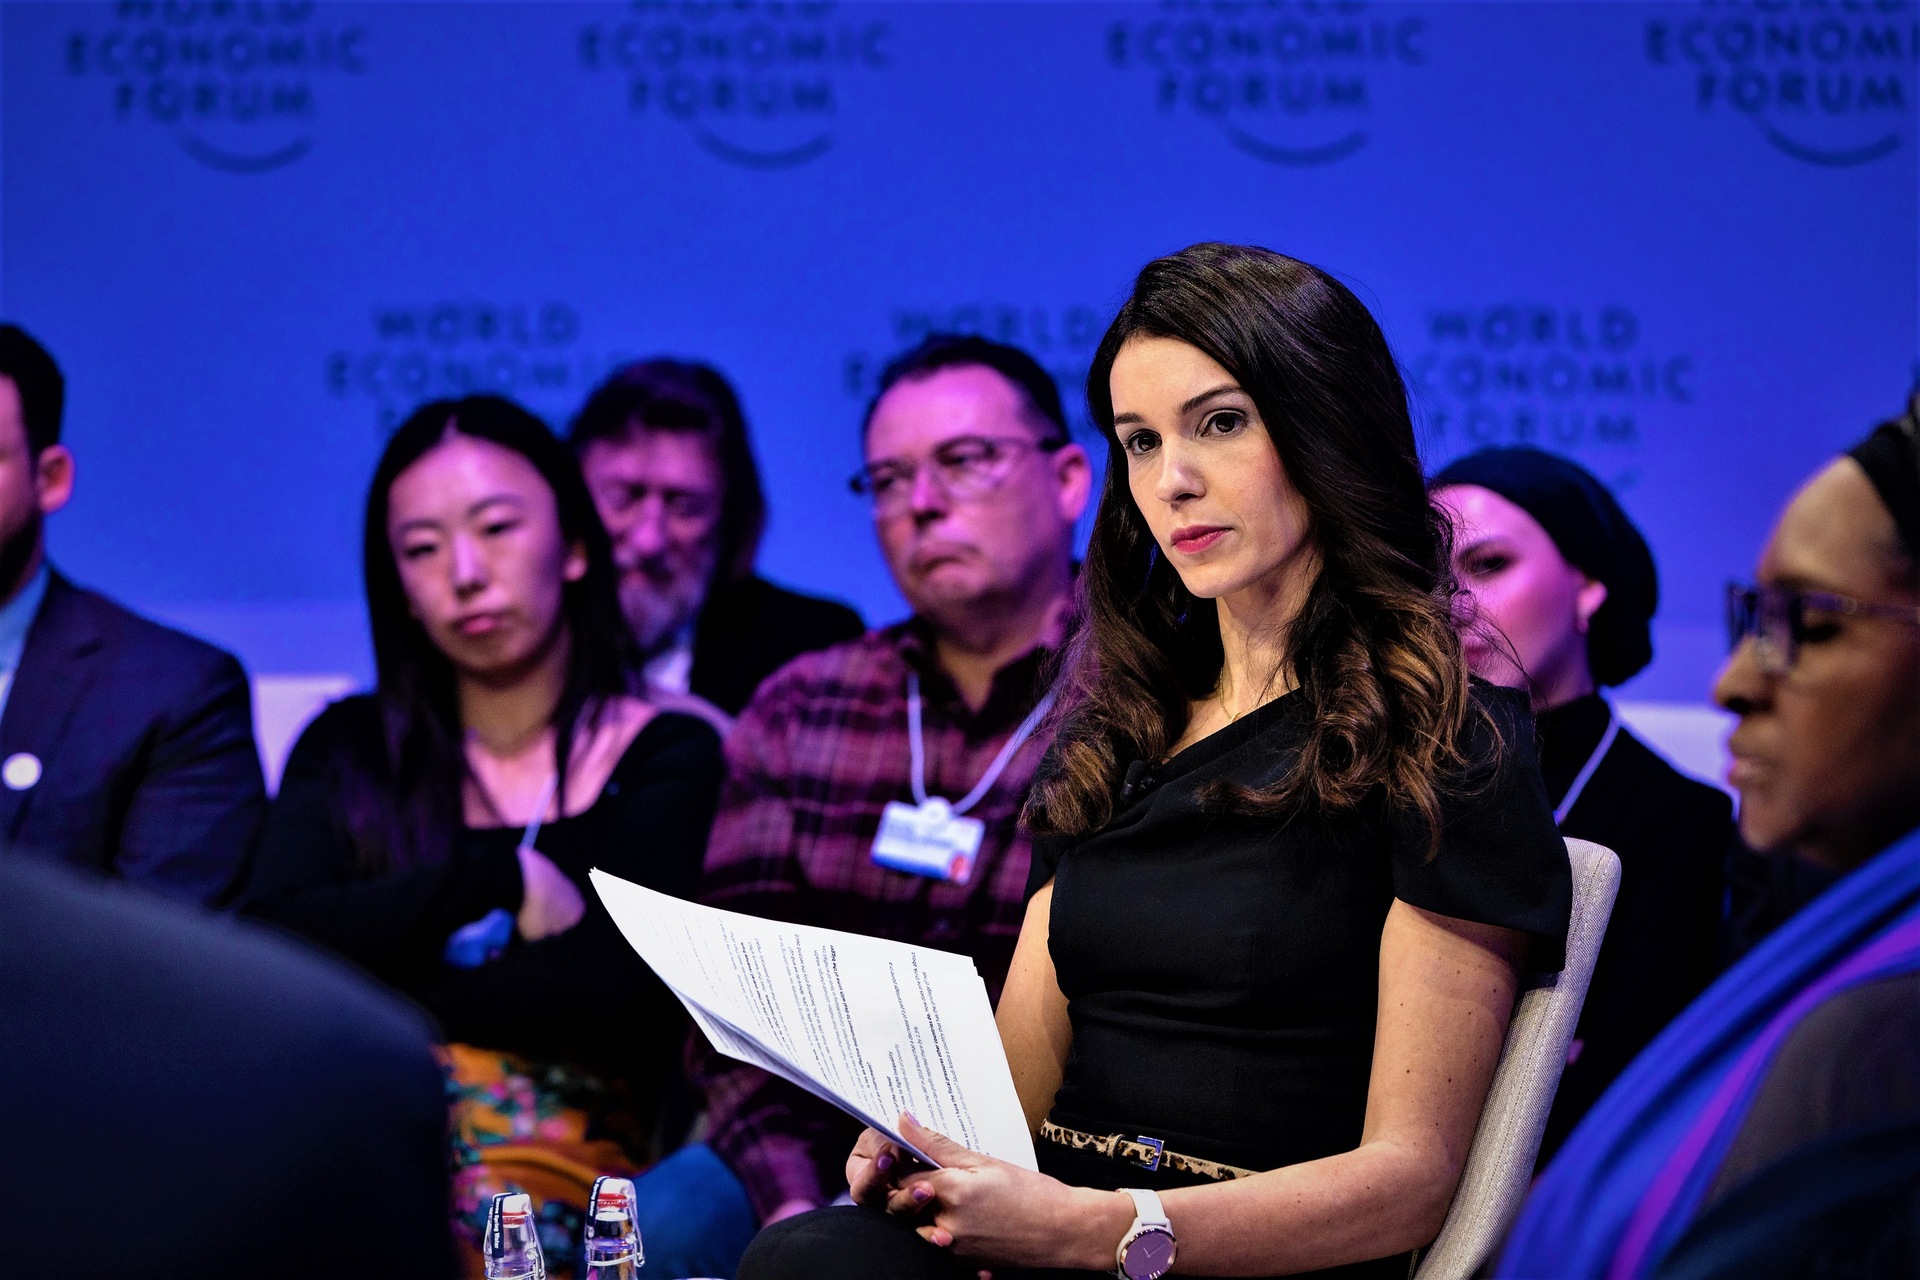 Cibersegurança: a apresentação da edição 2023 do "Global Tax Reform Stalling" no Fórum Econômico Mundial de Davos: a fala de Joumanna Bercetche, apresentadora da CNBC (Foto: Faruk Pinjo/WEF)